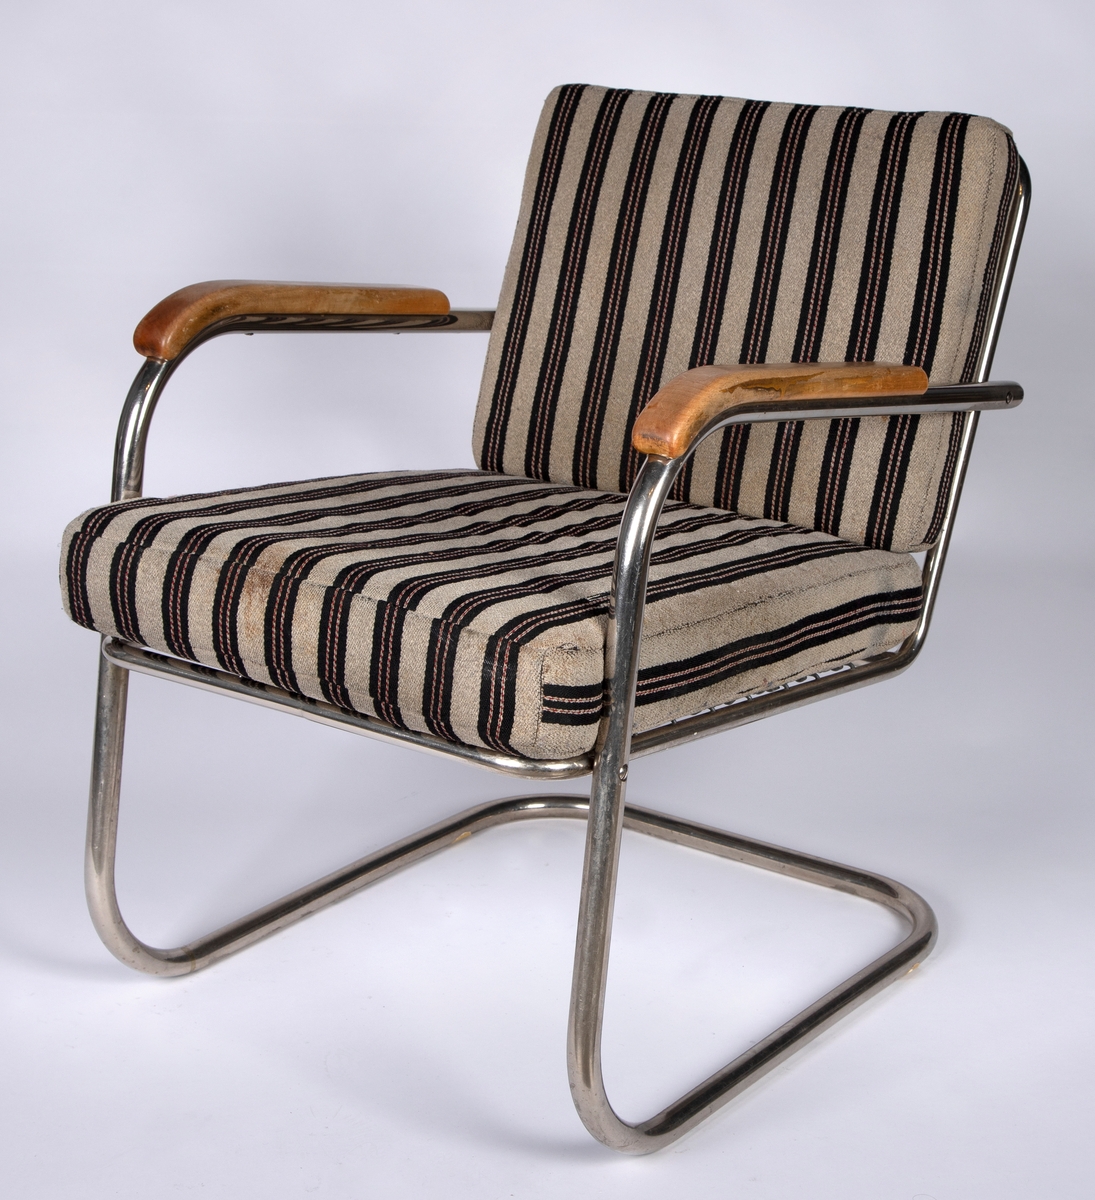 Stålrørslenestol med armlener i bjørk. Stolen er satt sammen av to stålrørselementer. Ben og lener er ett element og sete og rygg er ett element. Festepunkt midt på ryggen og foran på setet. Tre stålrørssprosser i ryggen og fjæring i sete. Gråbrunt møbeltrekk med vertikale brede, svarte striper som har to parallelle rader med smale vertikale striper. Disse er gråbrune med stiplete røde striper.